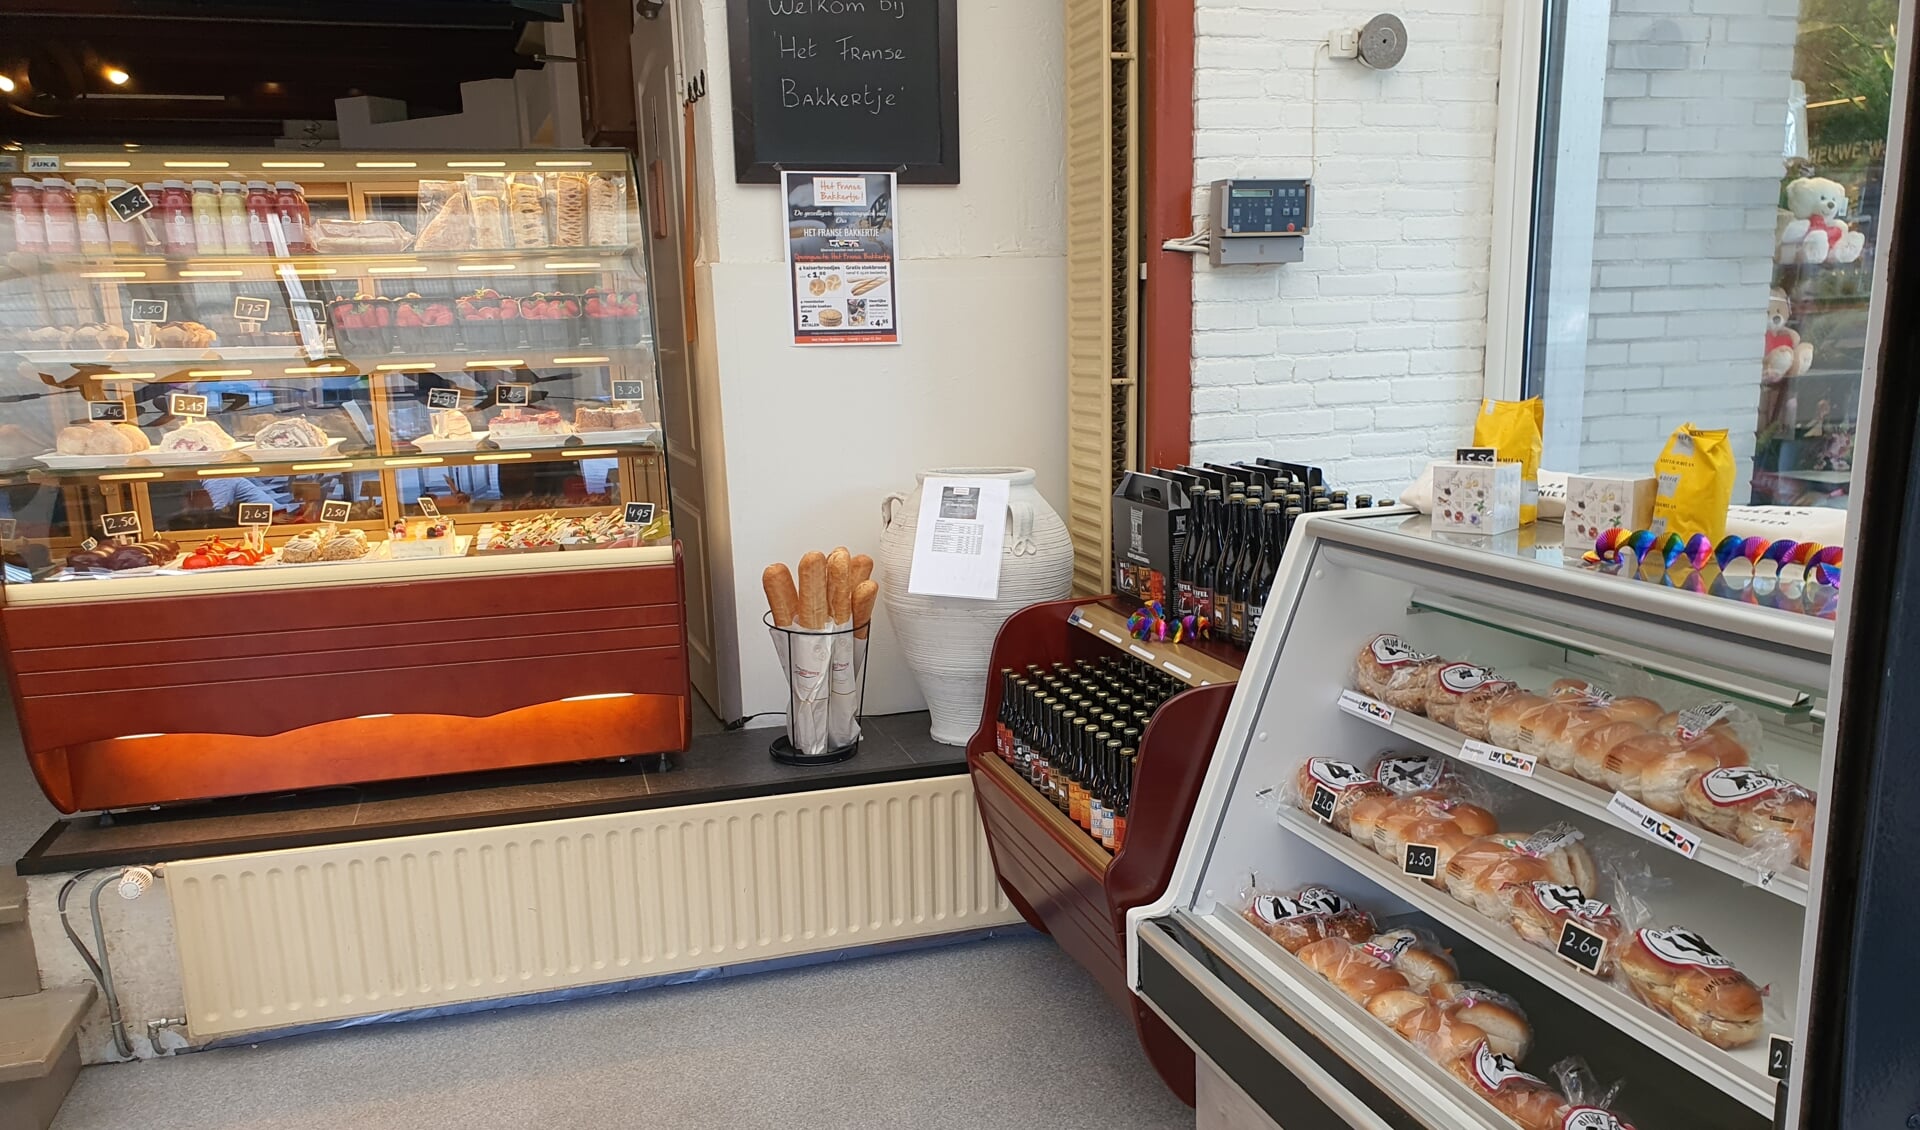 De bakkers Lamers opent pop-up store in Het Franse Bakkertje 